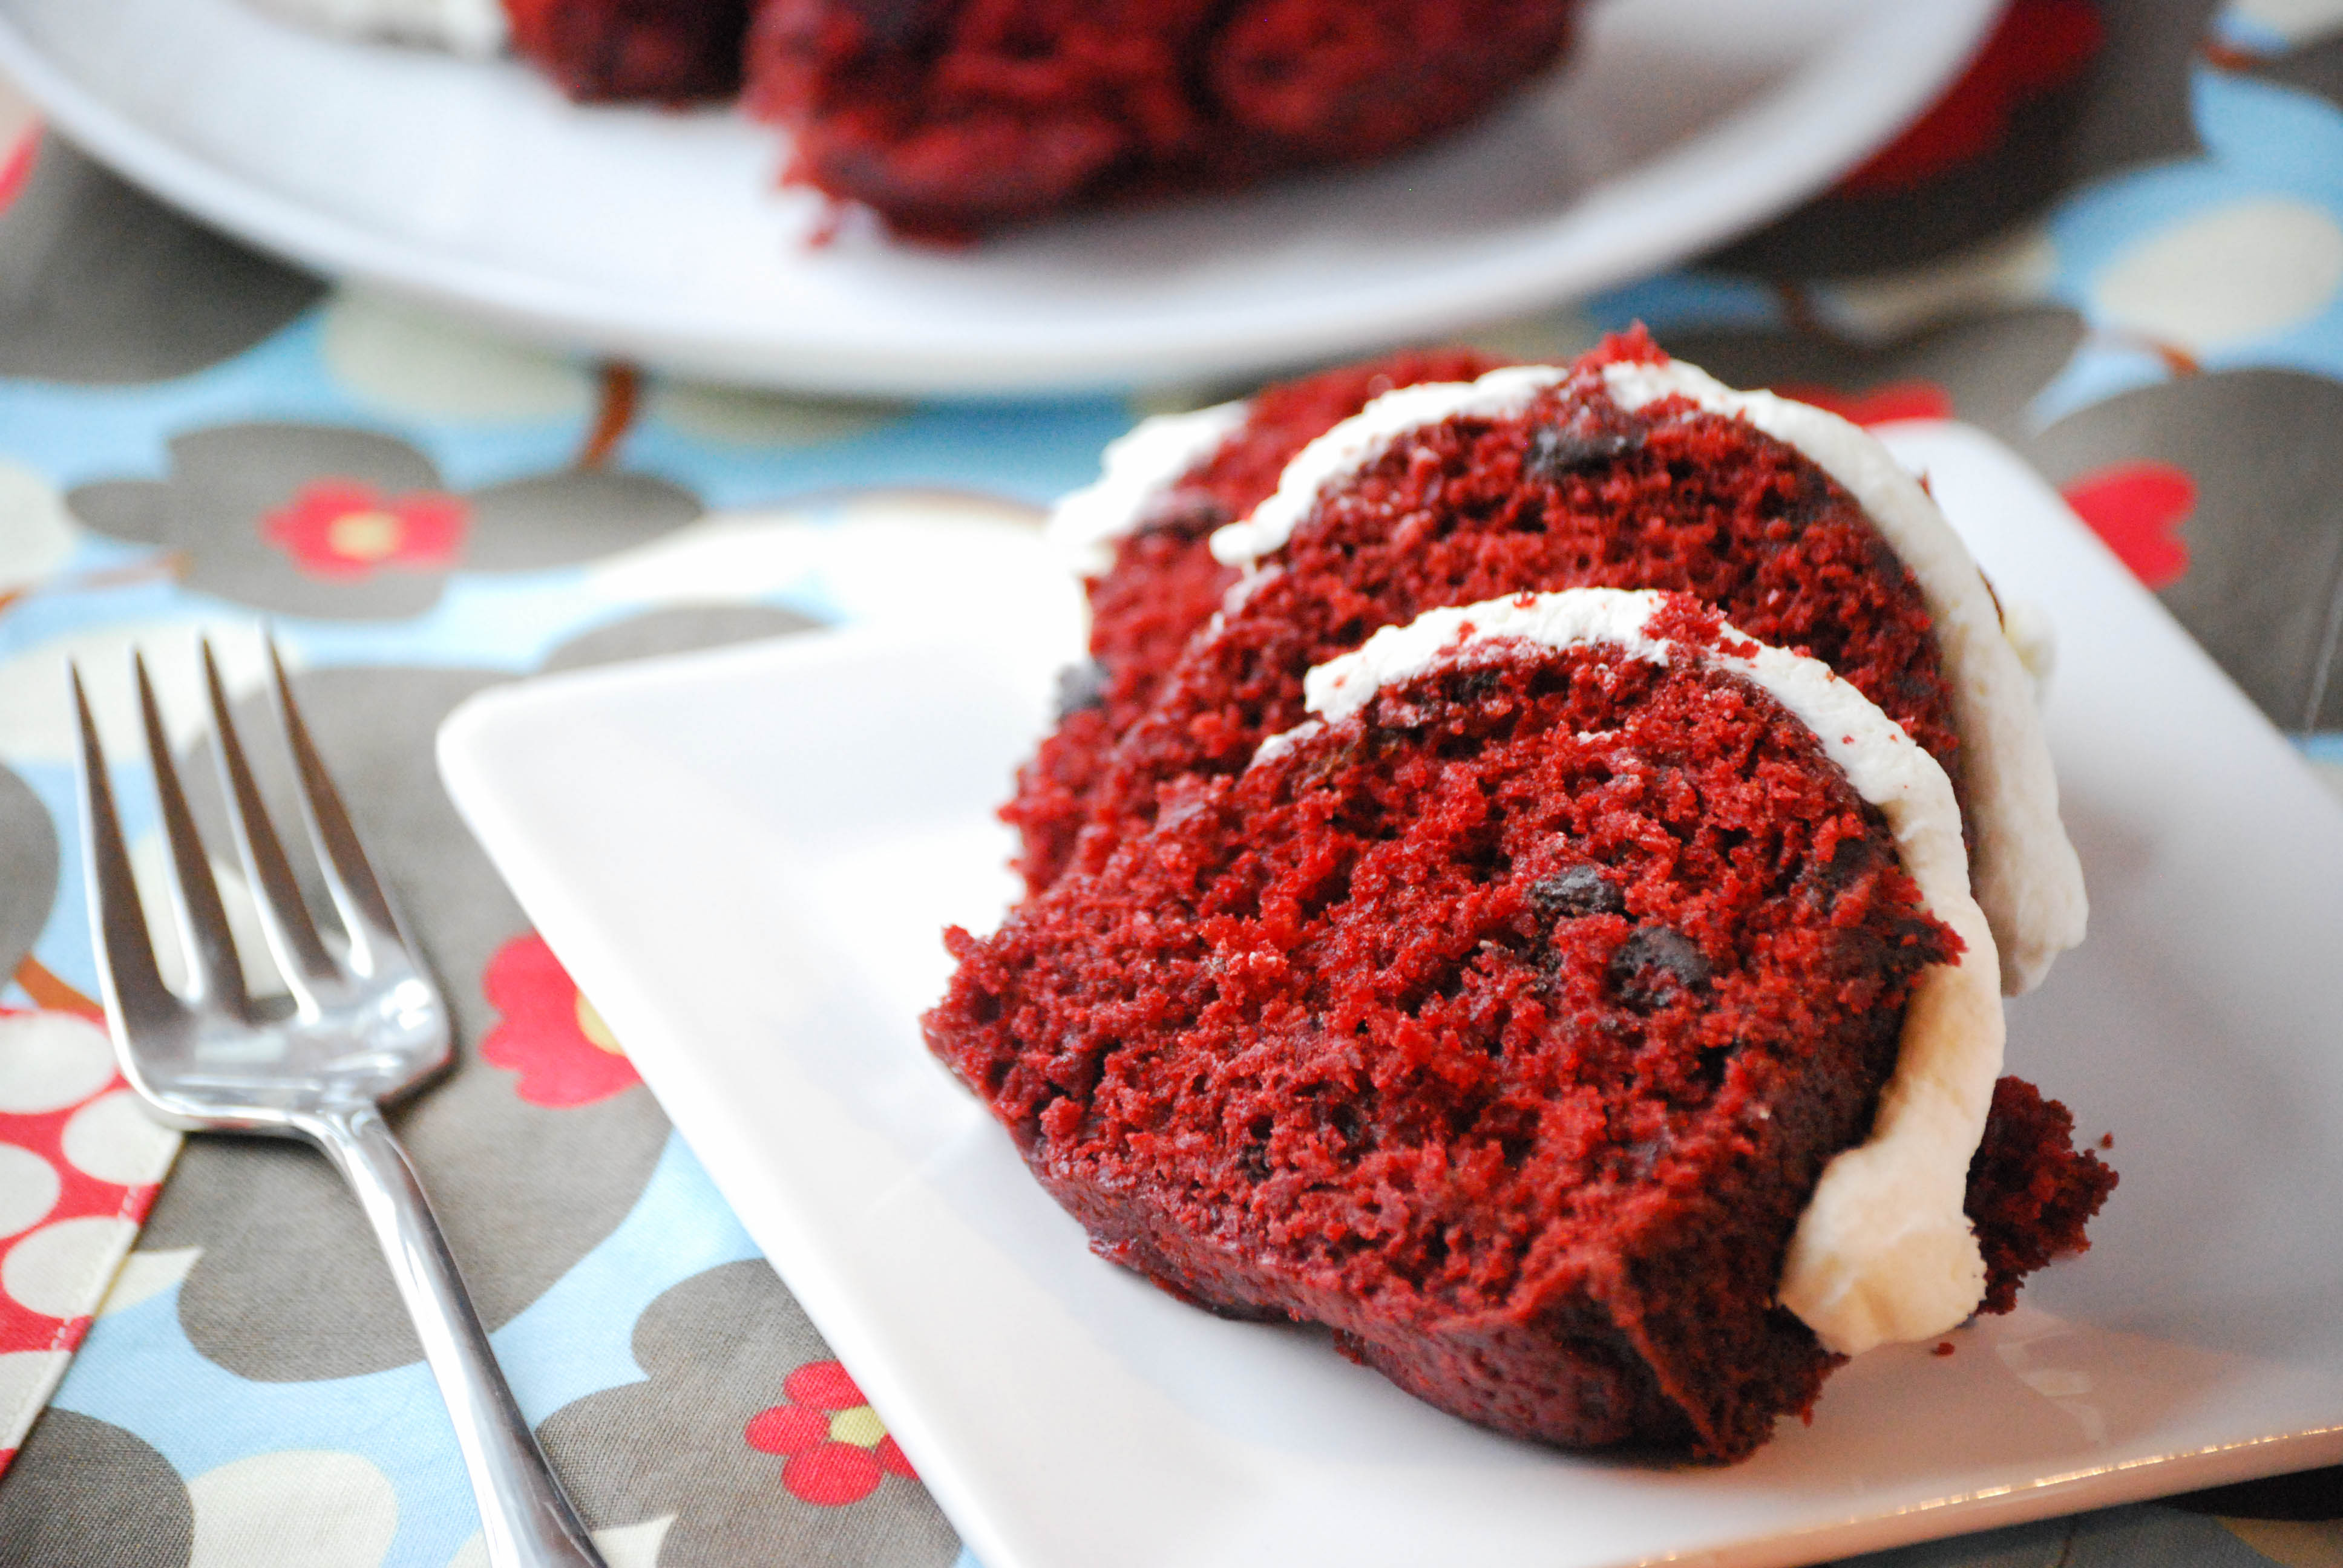 http://www.macaroniandcheesecake.com/wp-content/uploads/2013/04/Red-Velvet-Bundt-Cake-5-of-5.jpg